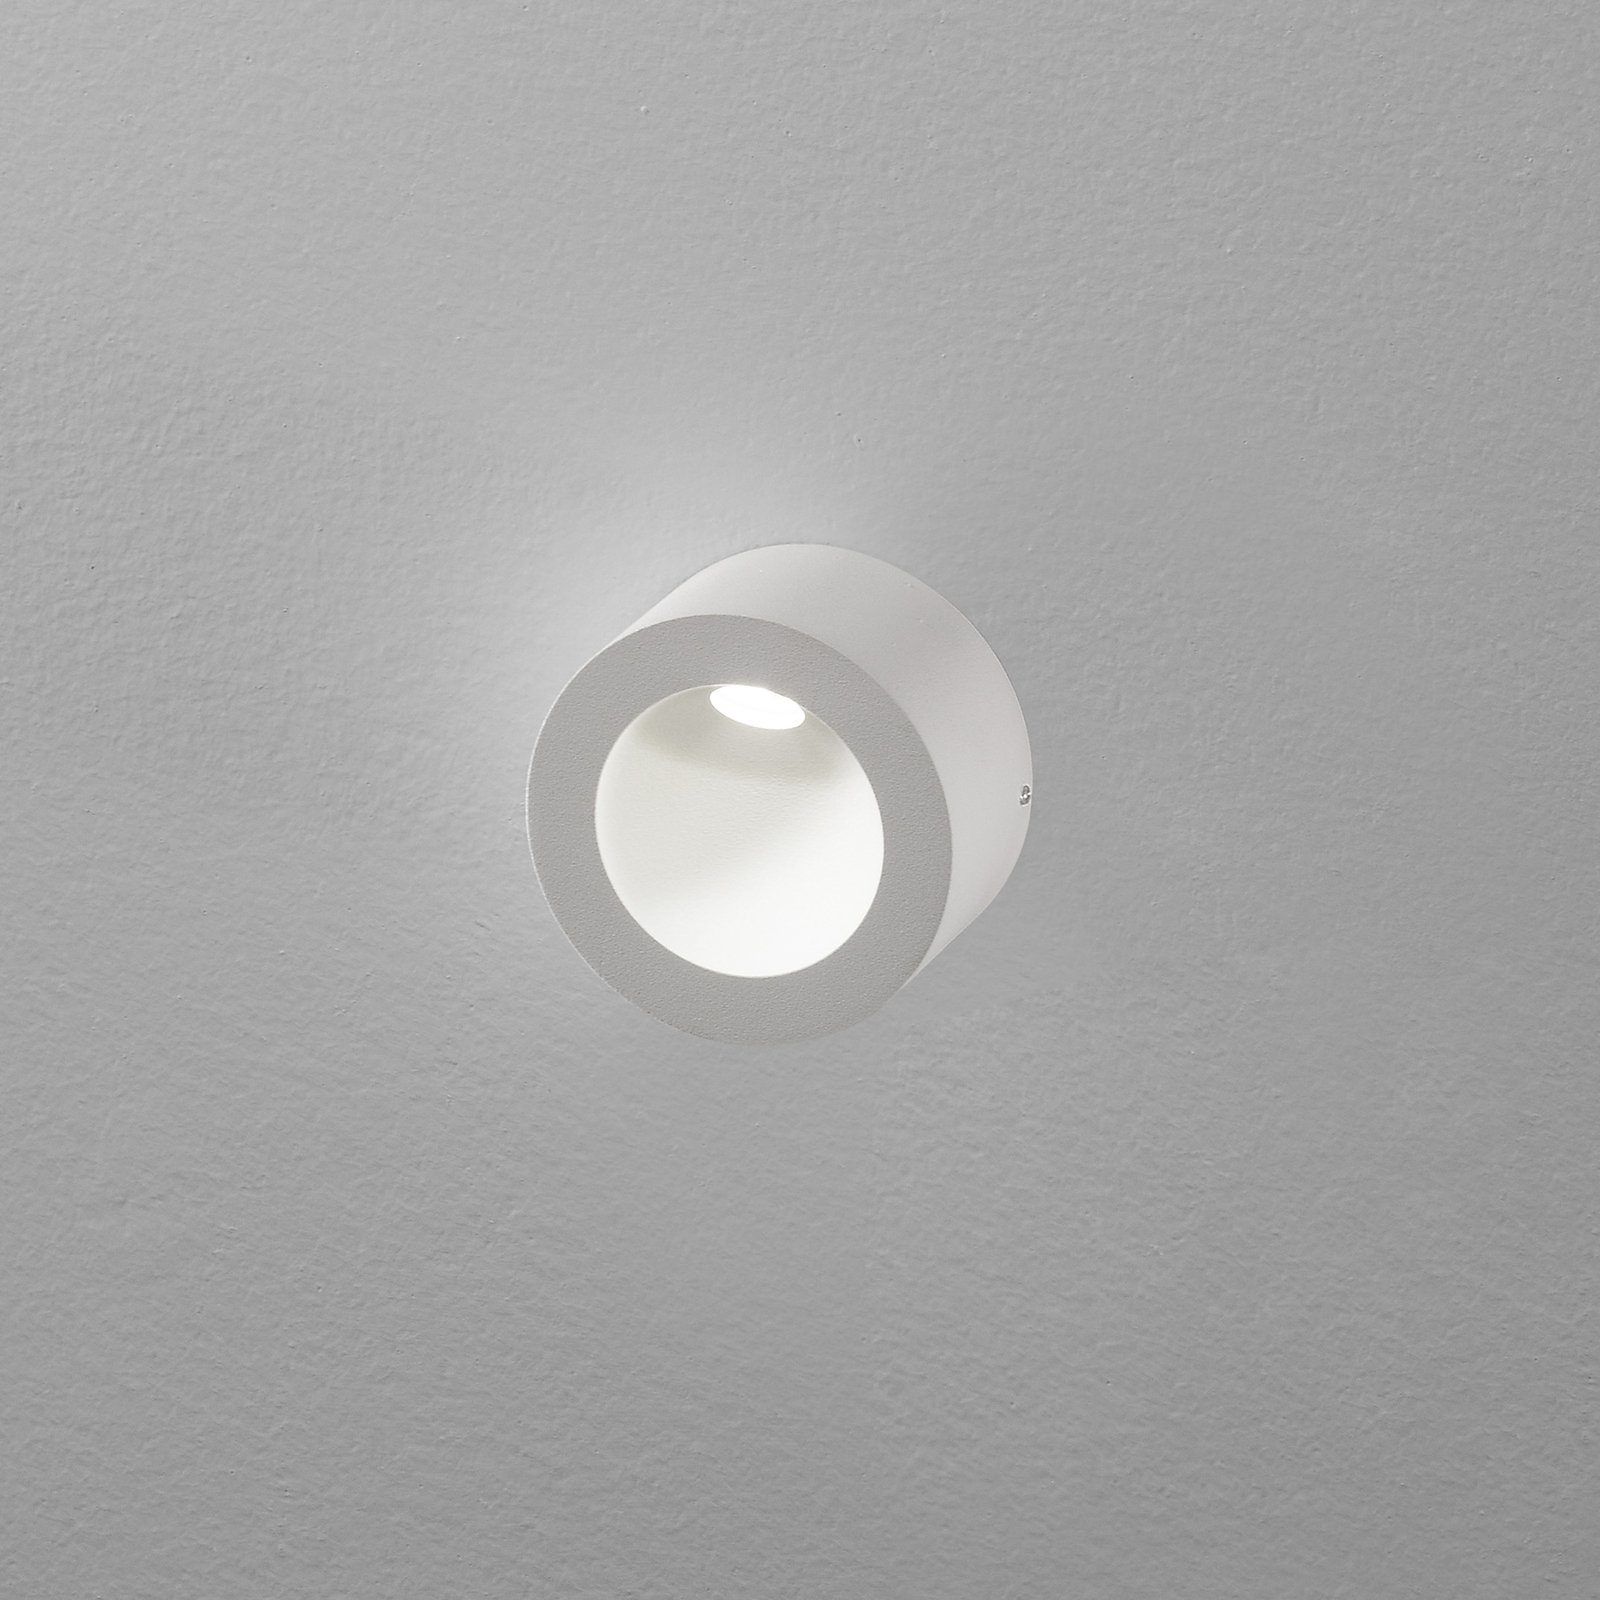 Egger Saxo on LED-vegglampe inne og ute